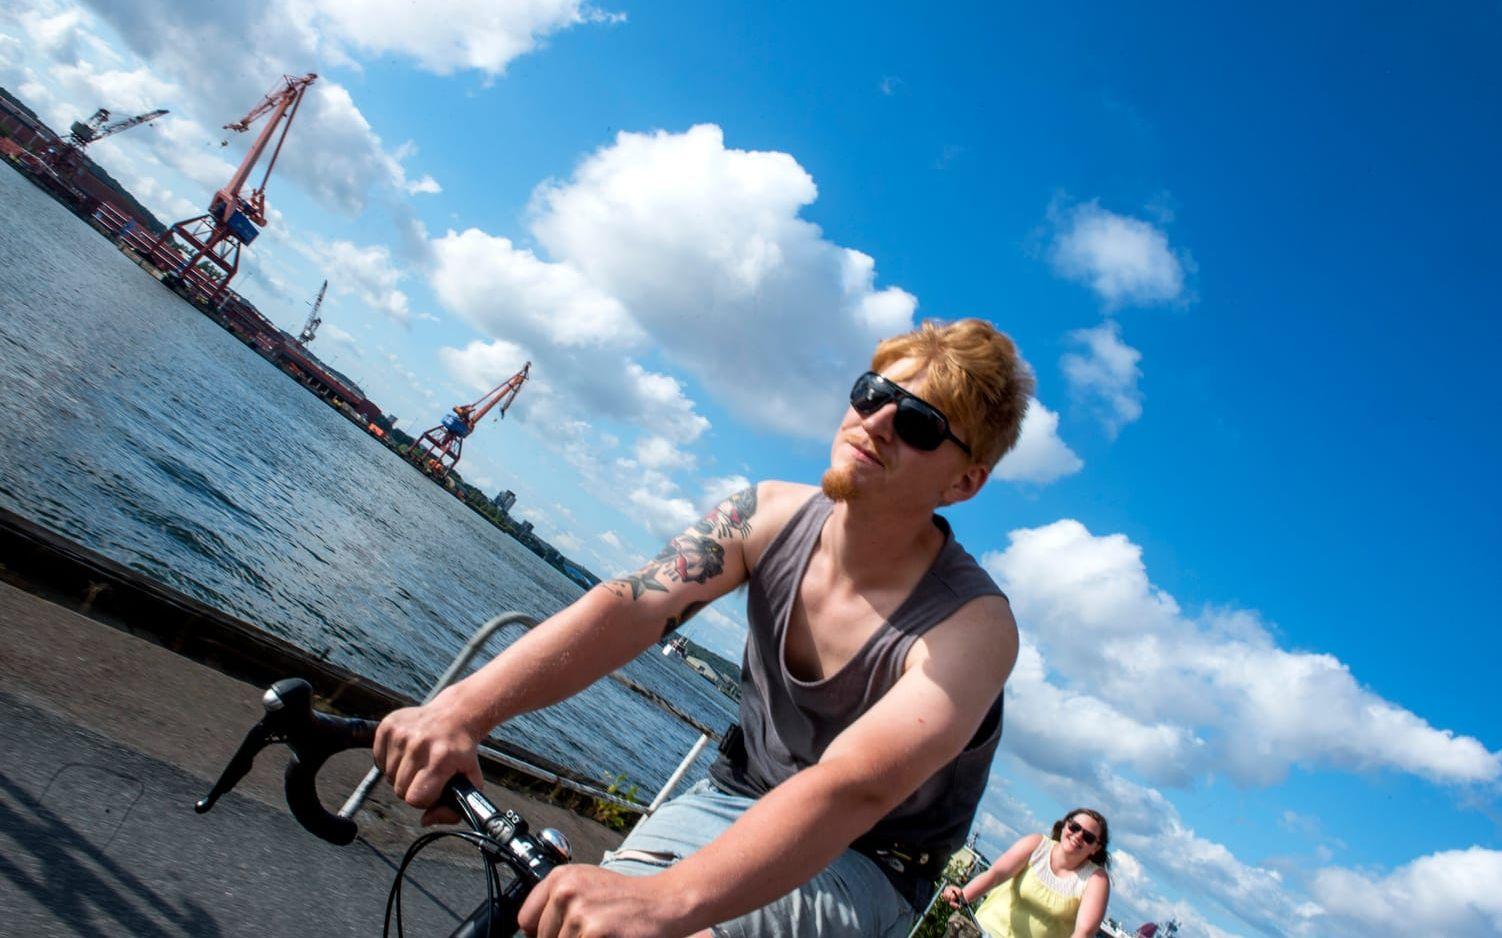 "Man är alltid glad när man cyklar. Det frigör lycka i kroppen", säger Per Söreke. Bild: Anders Hofgren